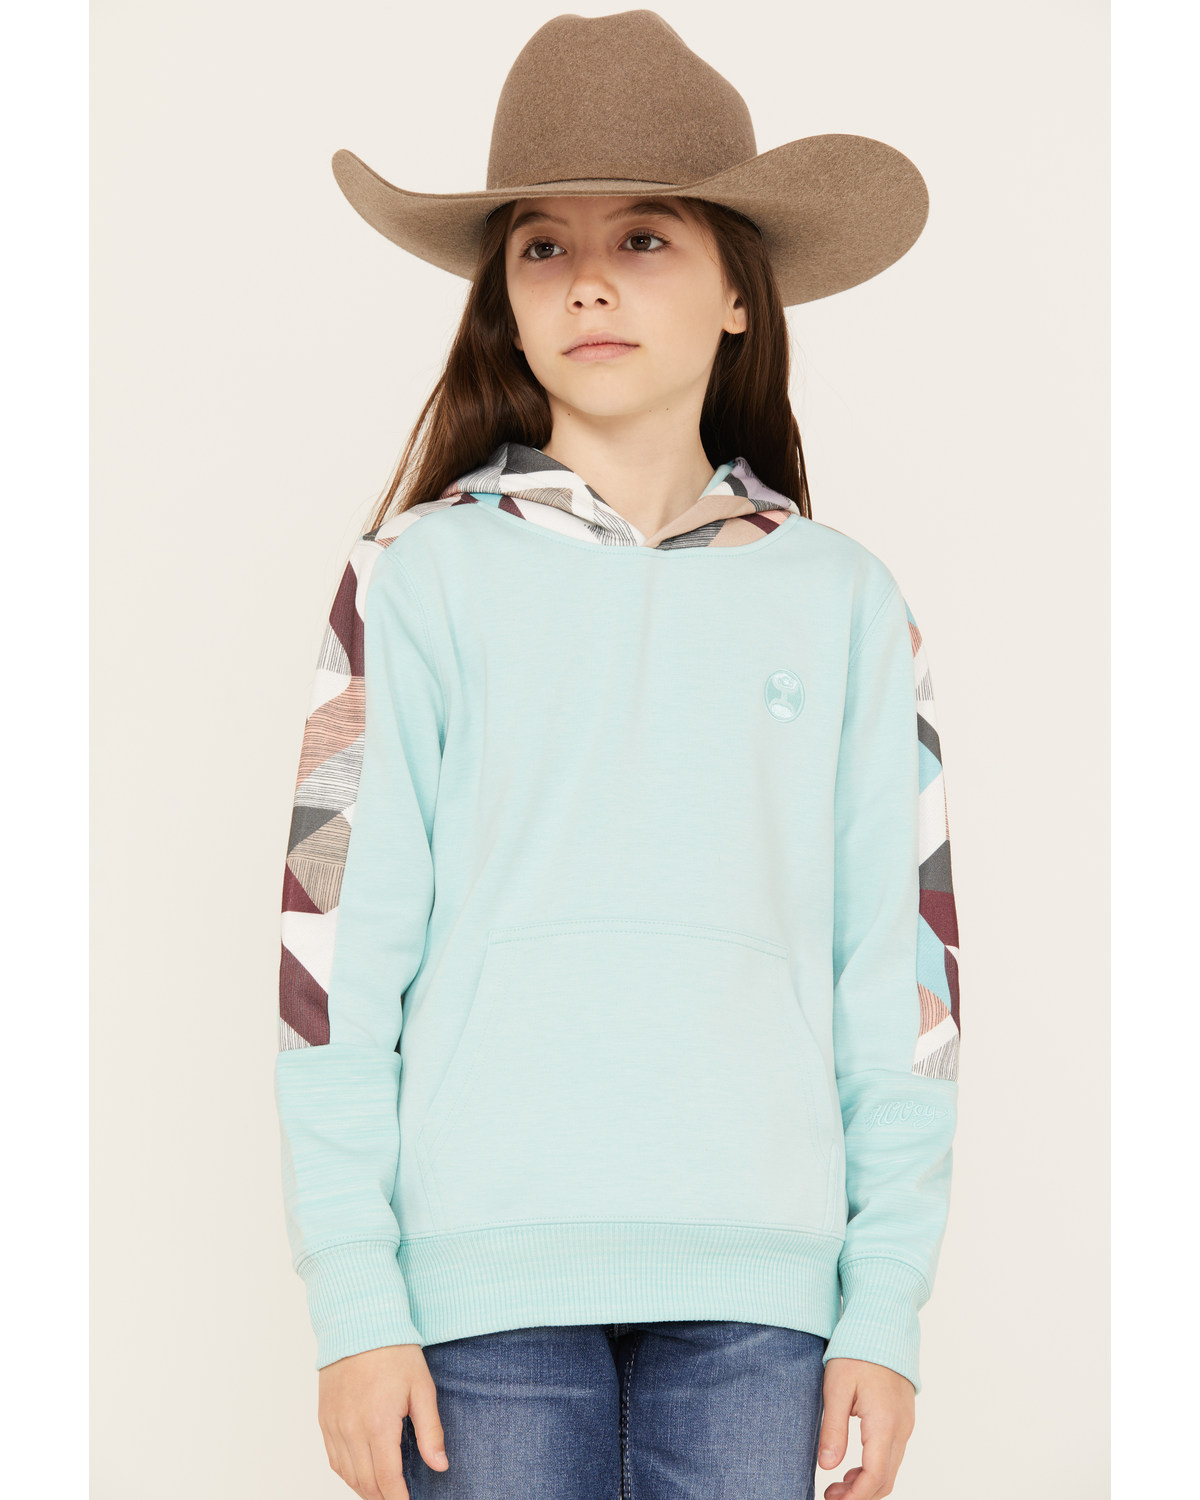 Hooey Girls' Geo Print Sleeve Hooded Sweatshirt